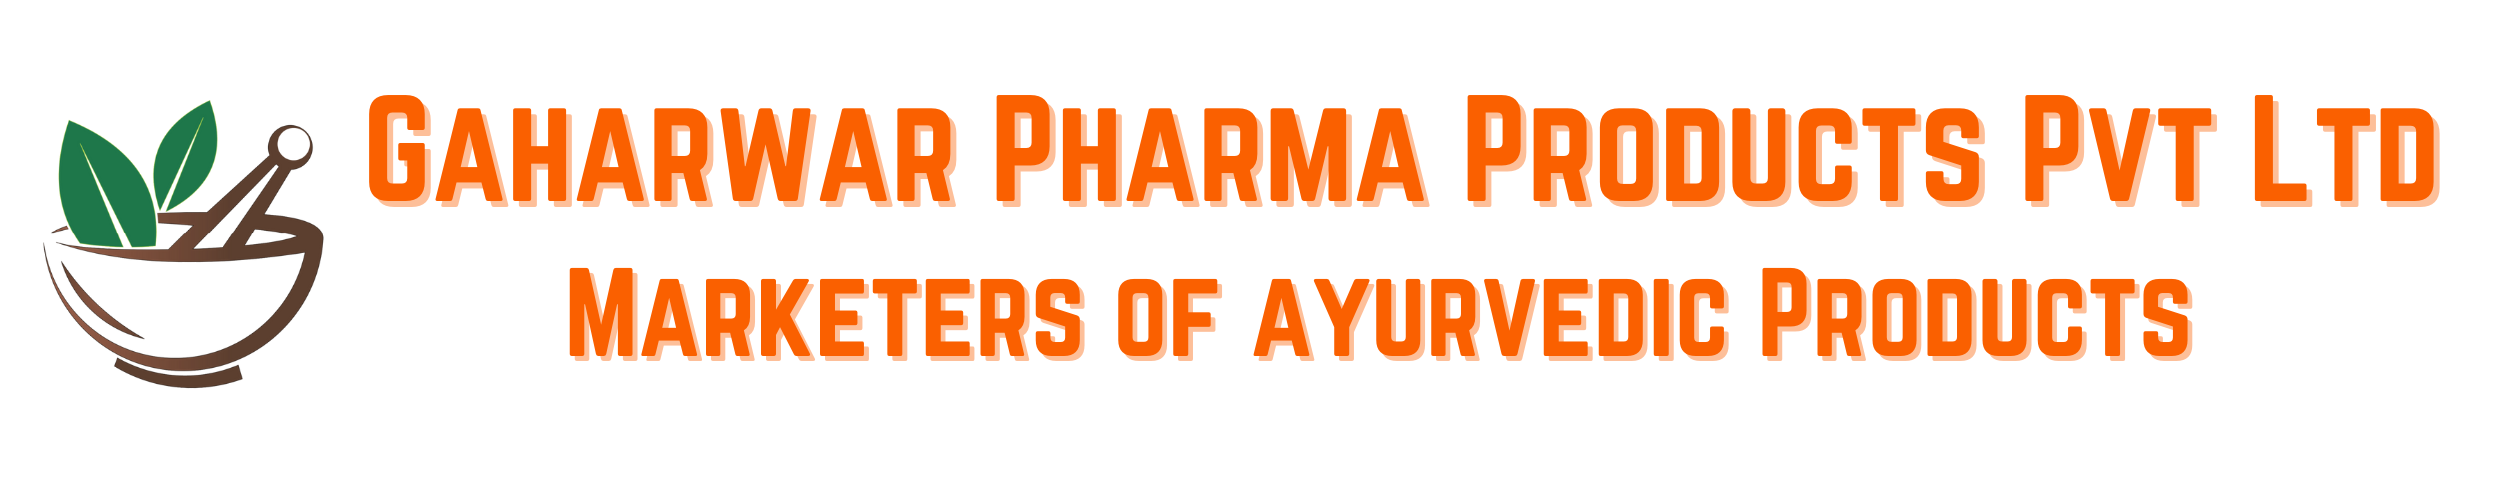 Gaharwar Pharma 